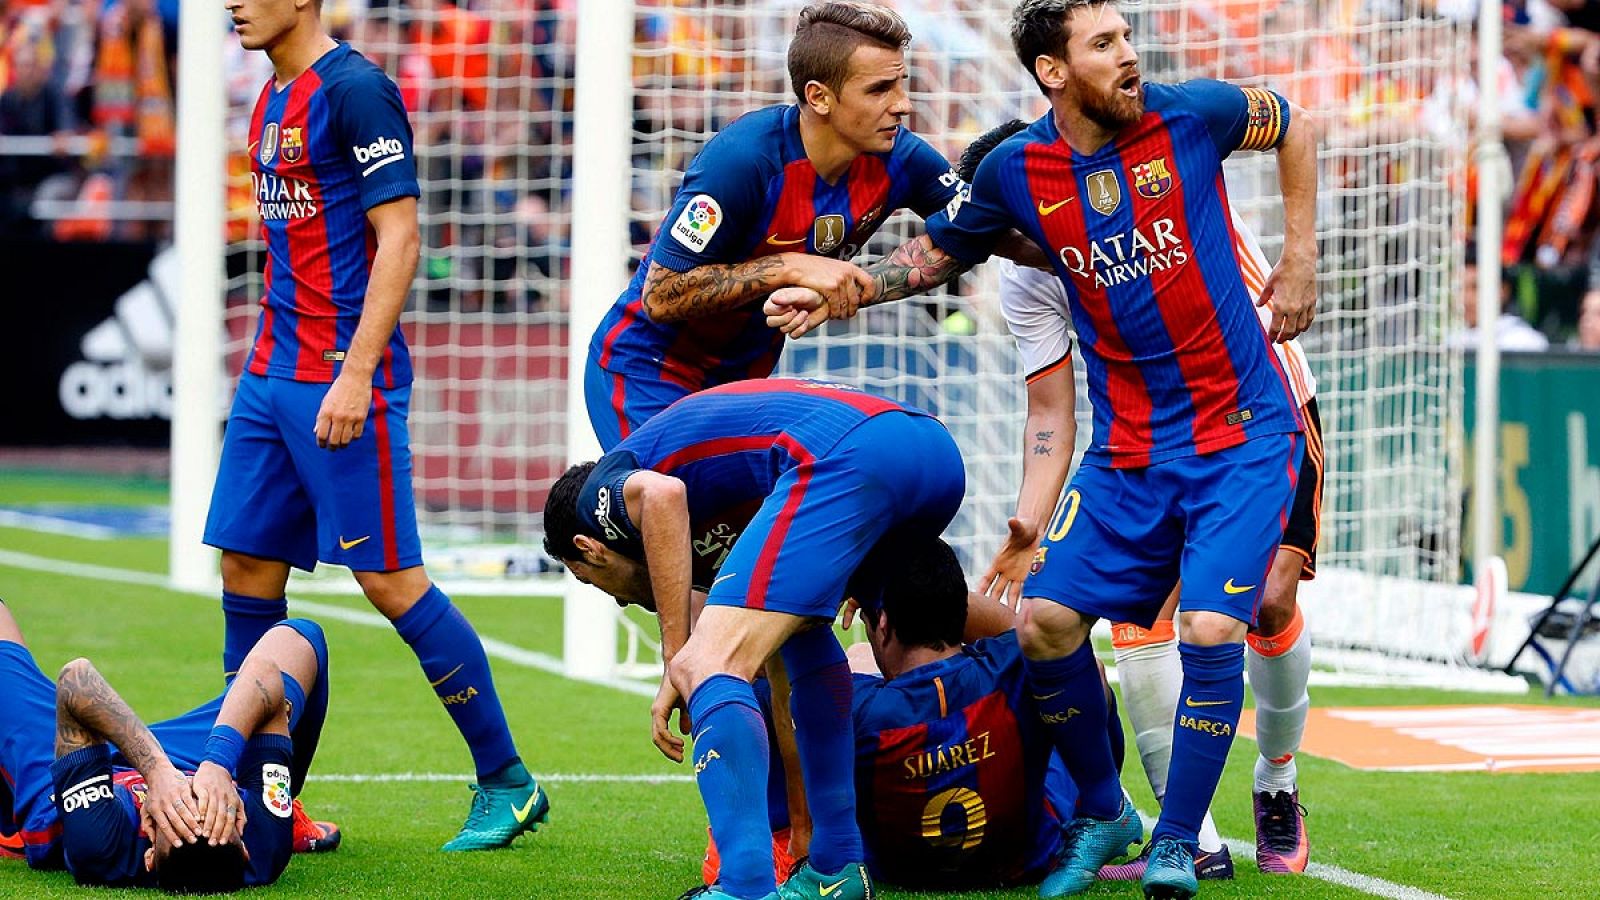 Botellazo en el Valencia - Barcelona tras el tercer gol